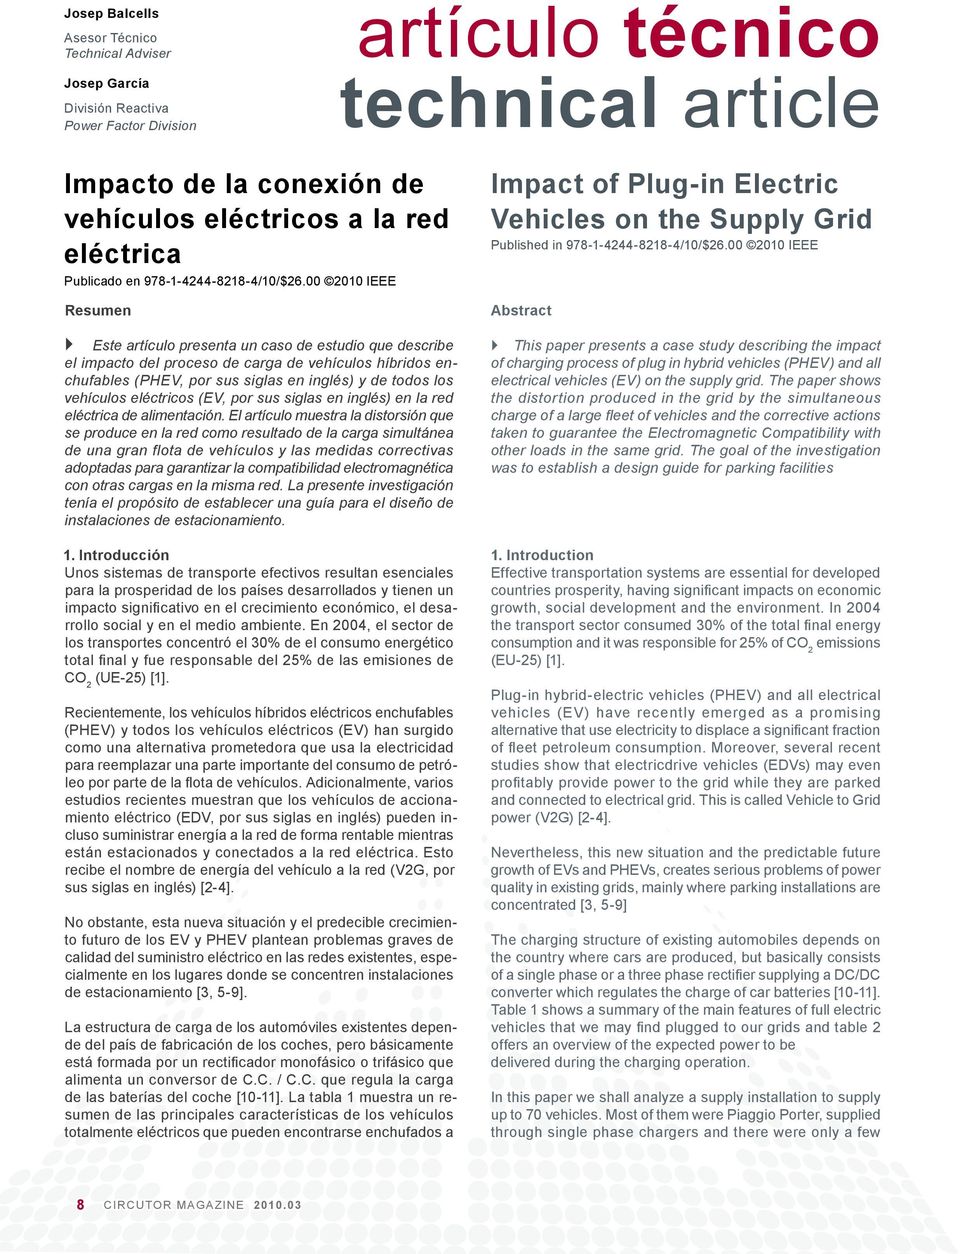 00 2010 IEEE Resumen Este artículo presenta un caso de estudio que describe el impacto del proceso de carga de vehículos híbridos enchufables (PHEV, por sus siglas en inglés) y de todos los vehículos